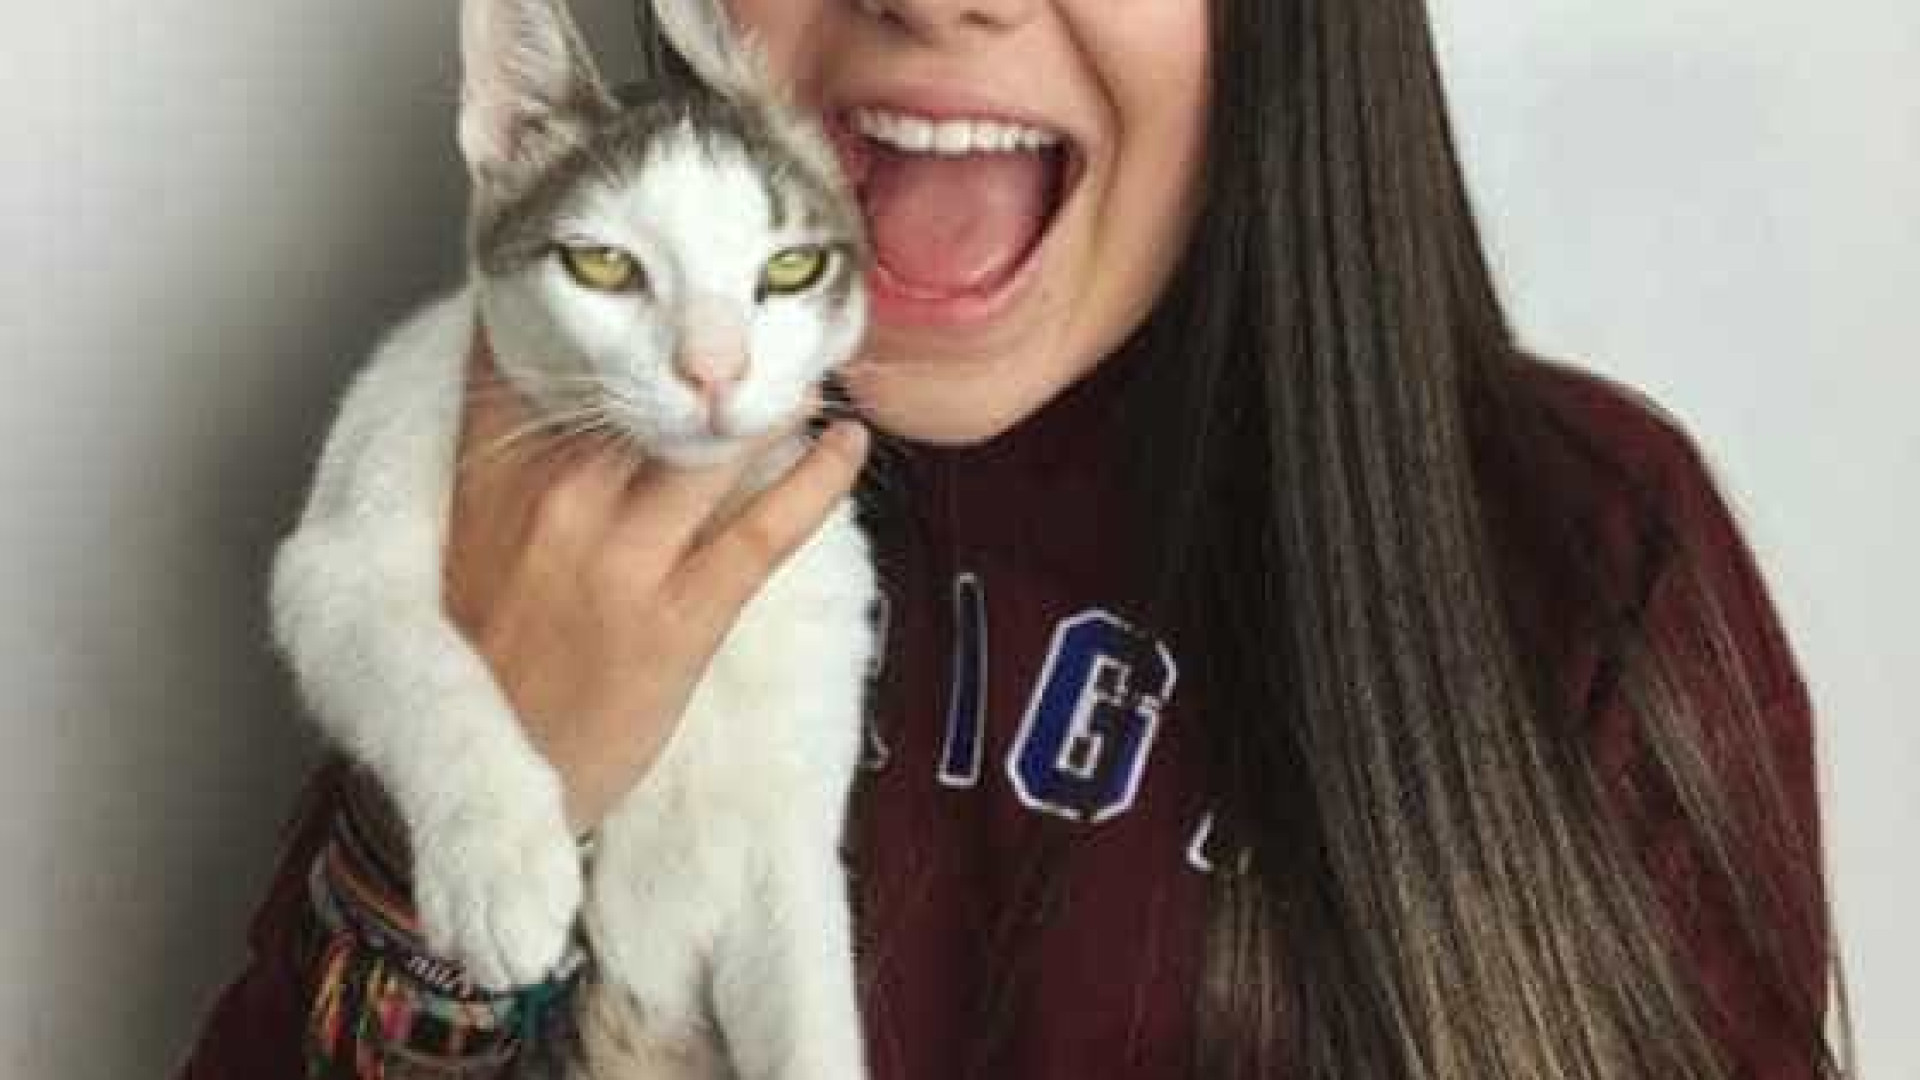 Blogueira gera polêmica com vídeo em que cospe na boca de gato